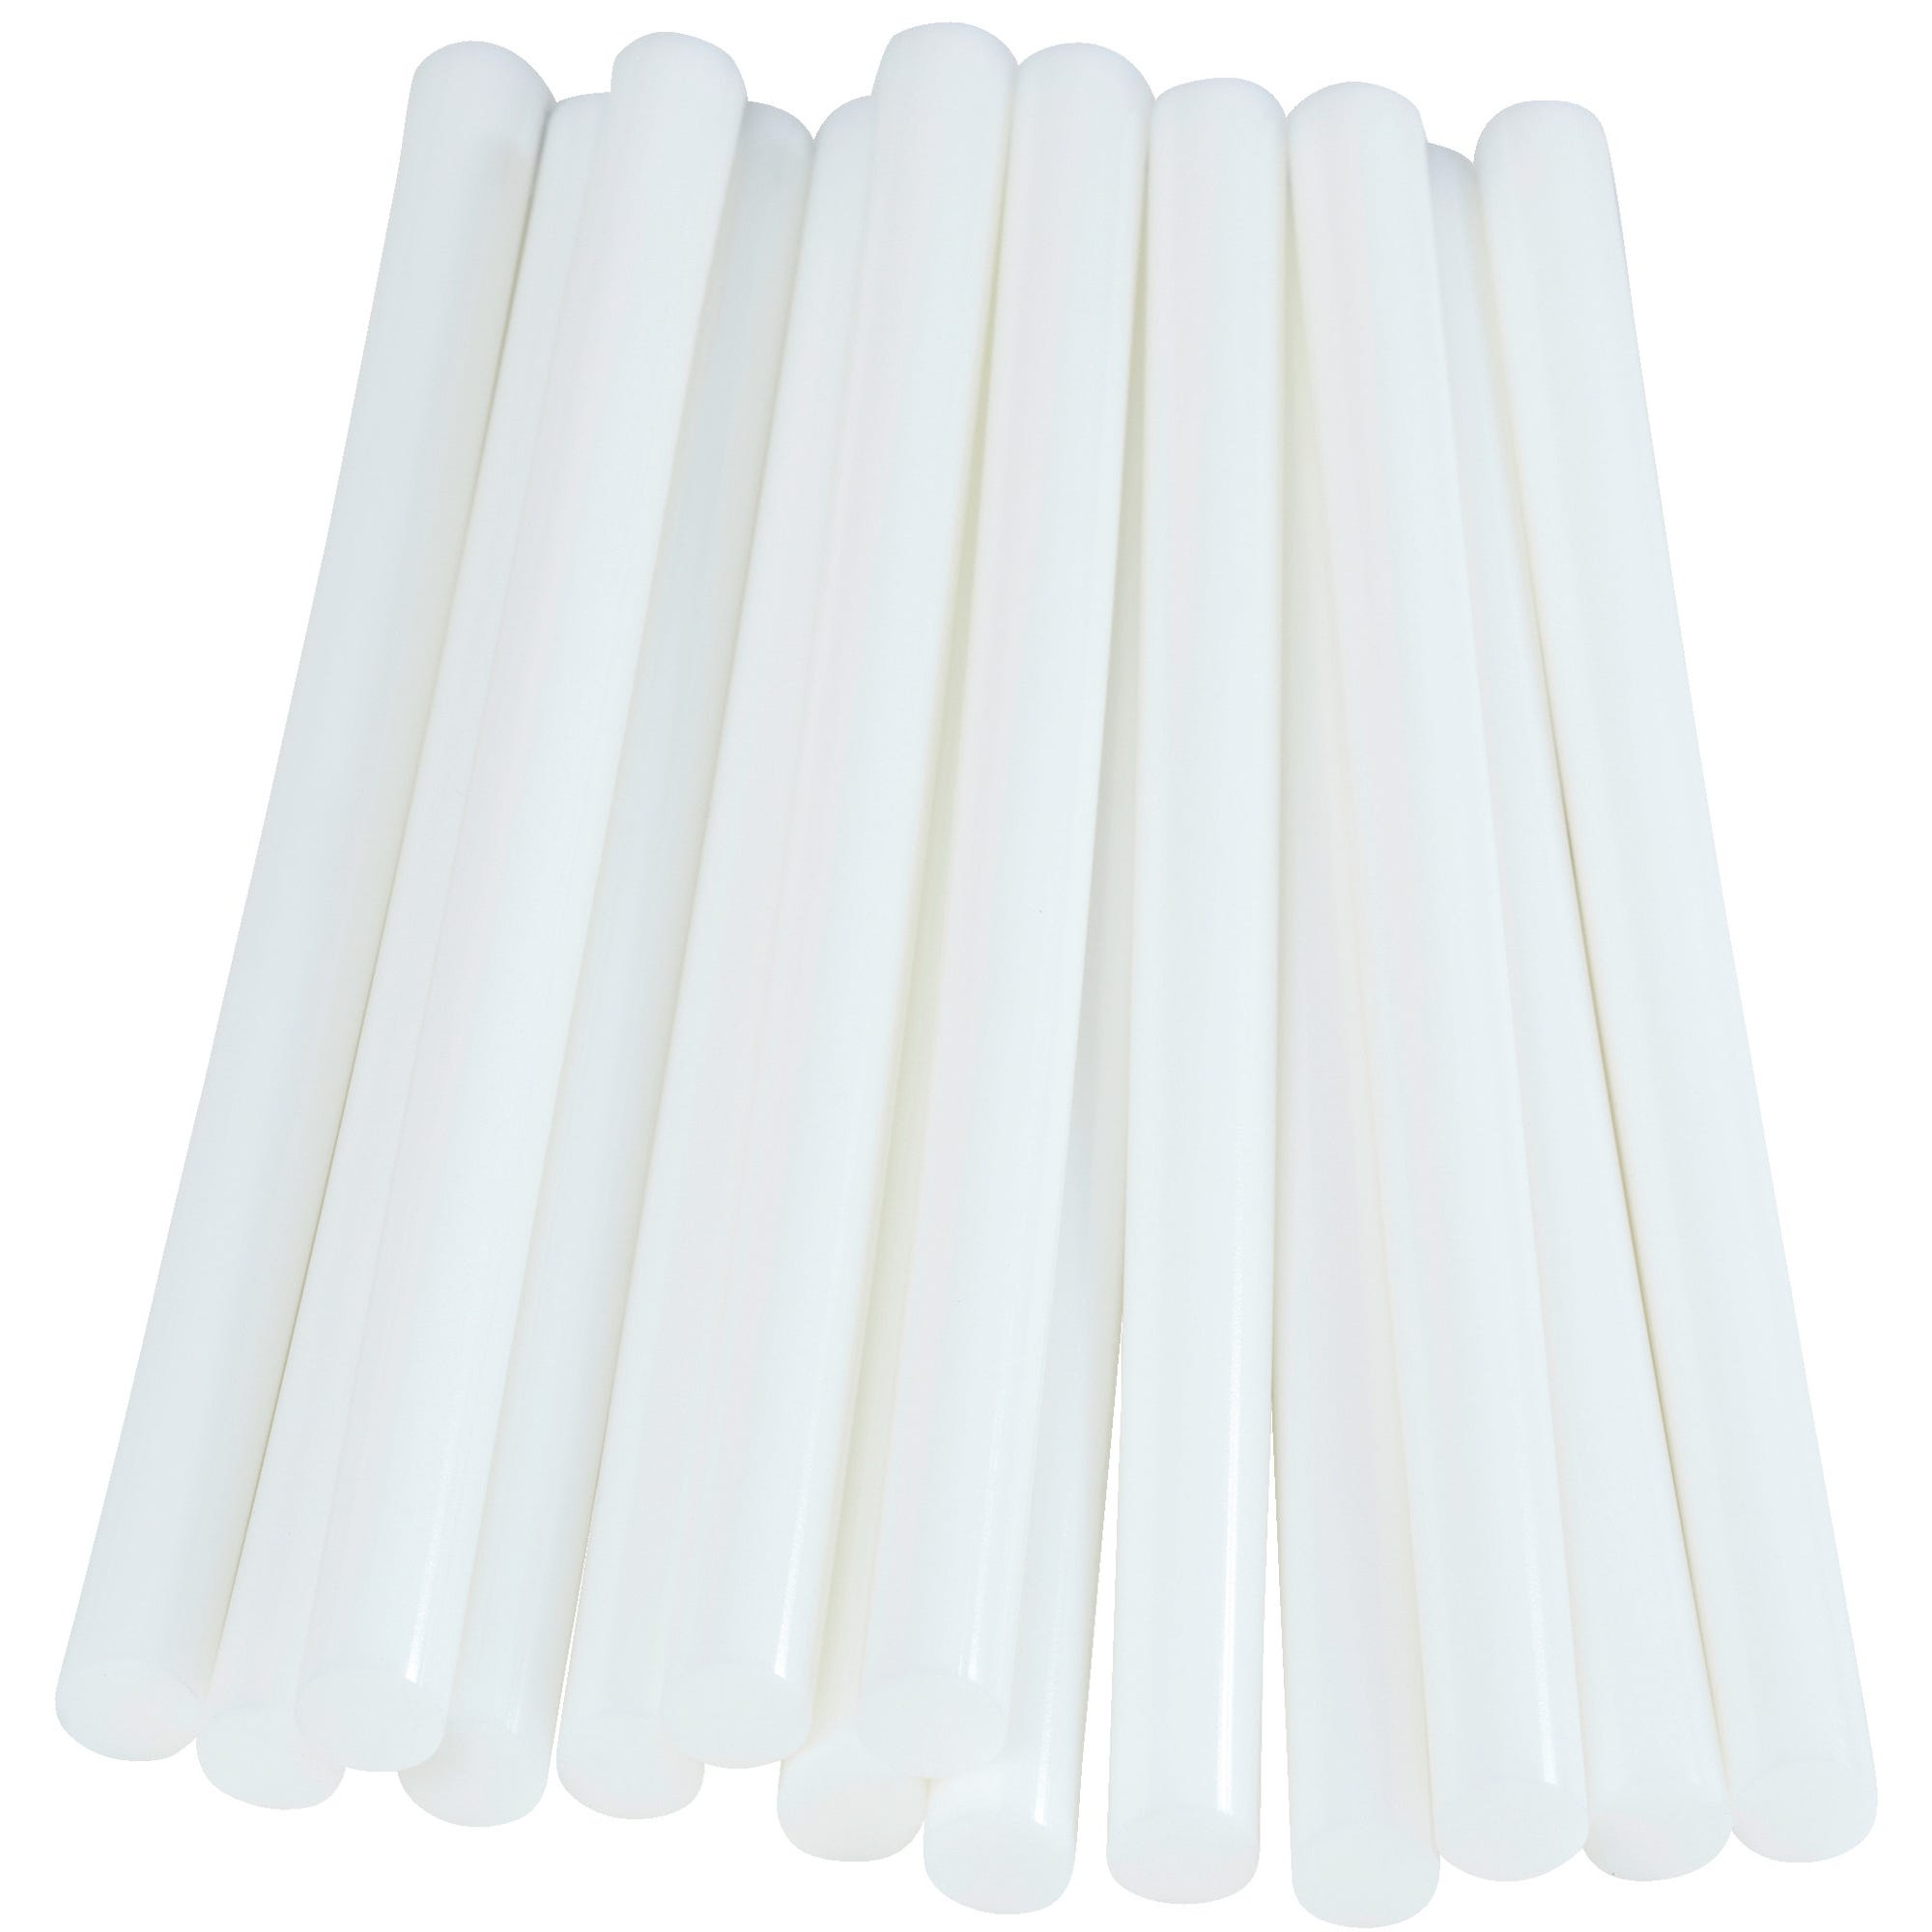 Colle céramique blanche 48 bâtons Diam.12 mm - RAPID 2